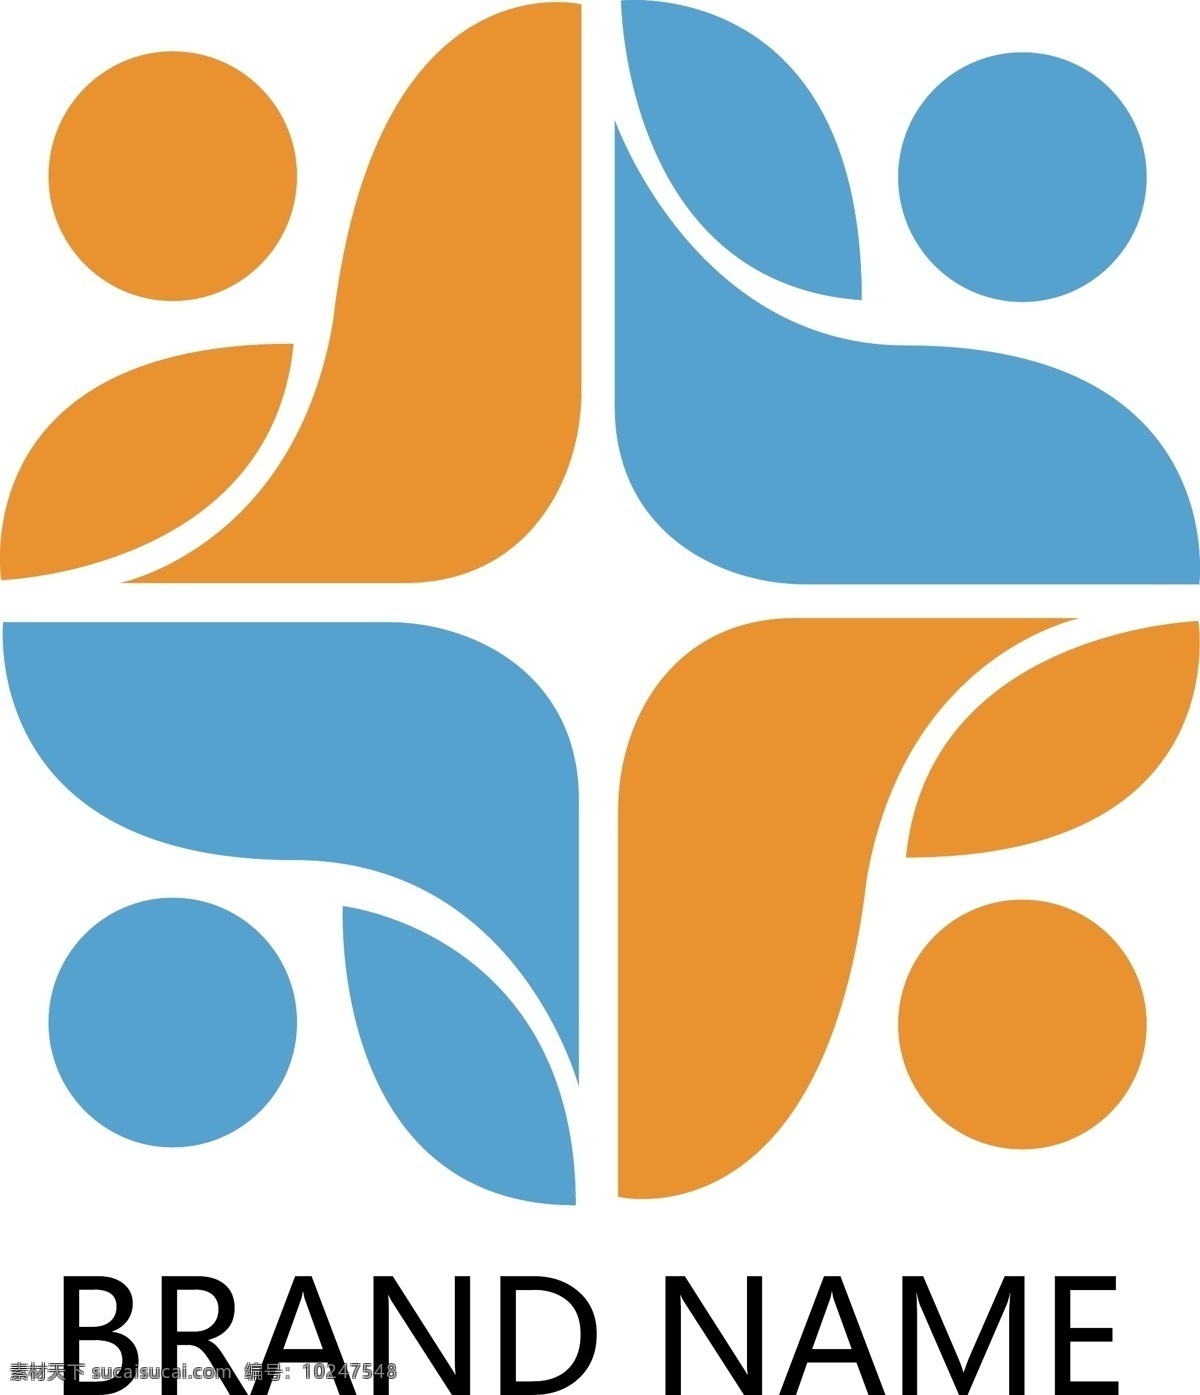 企业 商务 logo 团队 简约 公司标志 公司logo 企业标志 企业logo logo设计